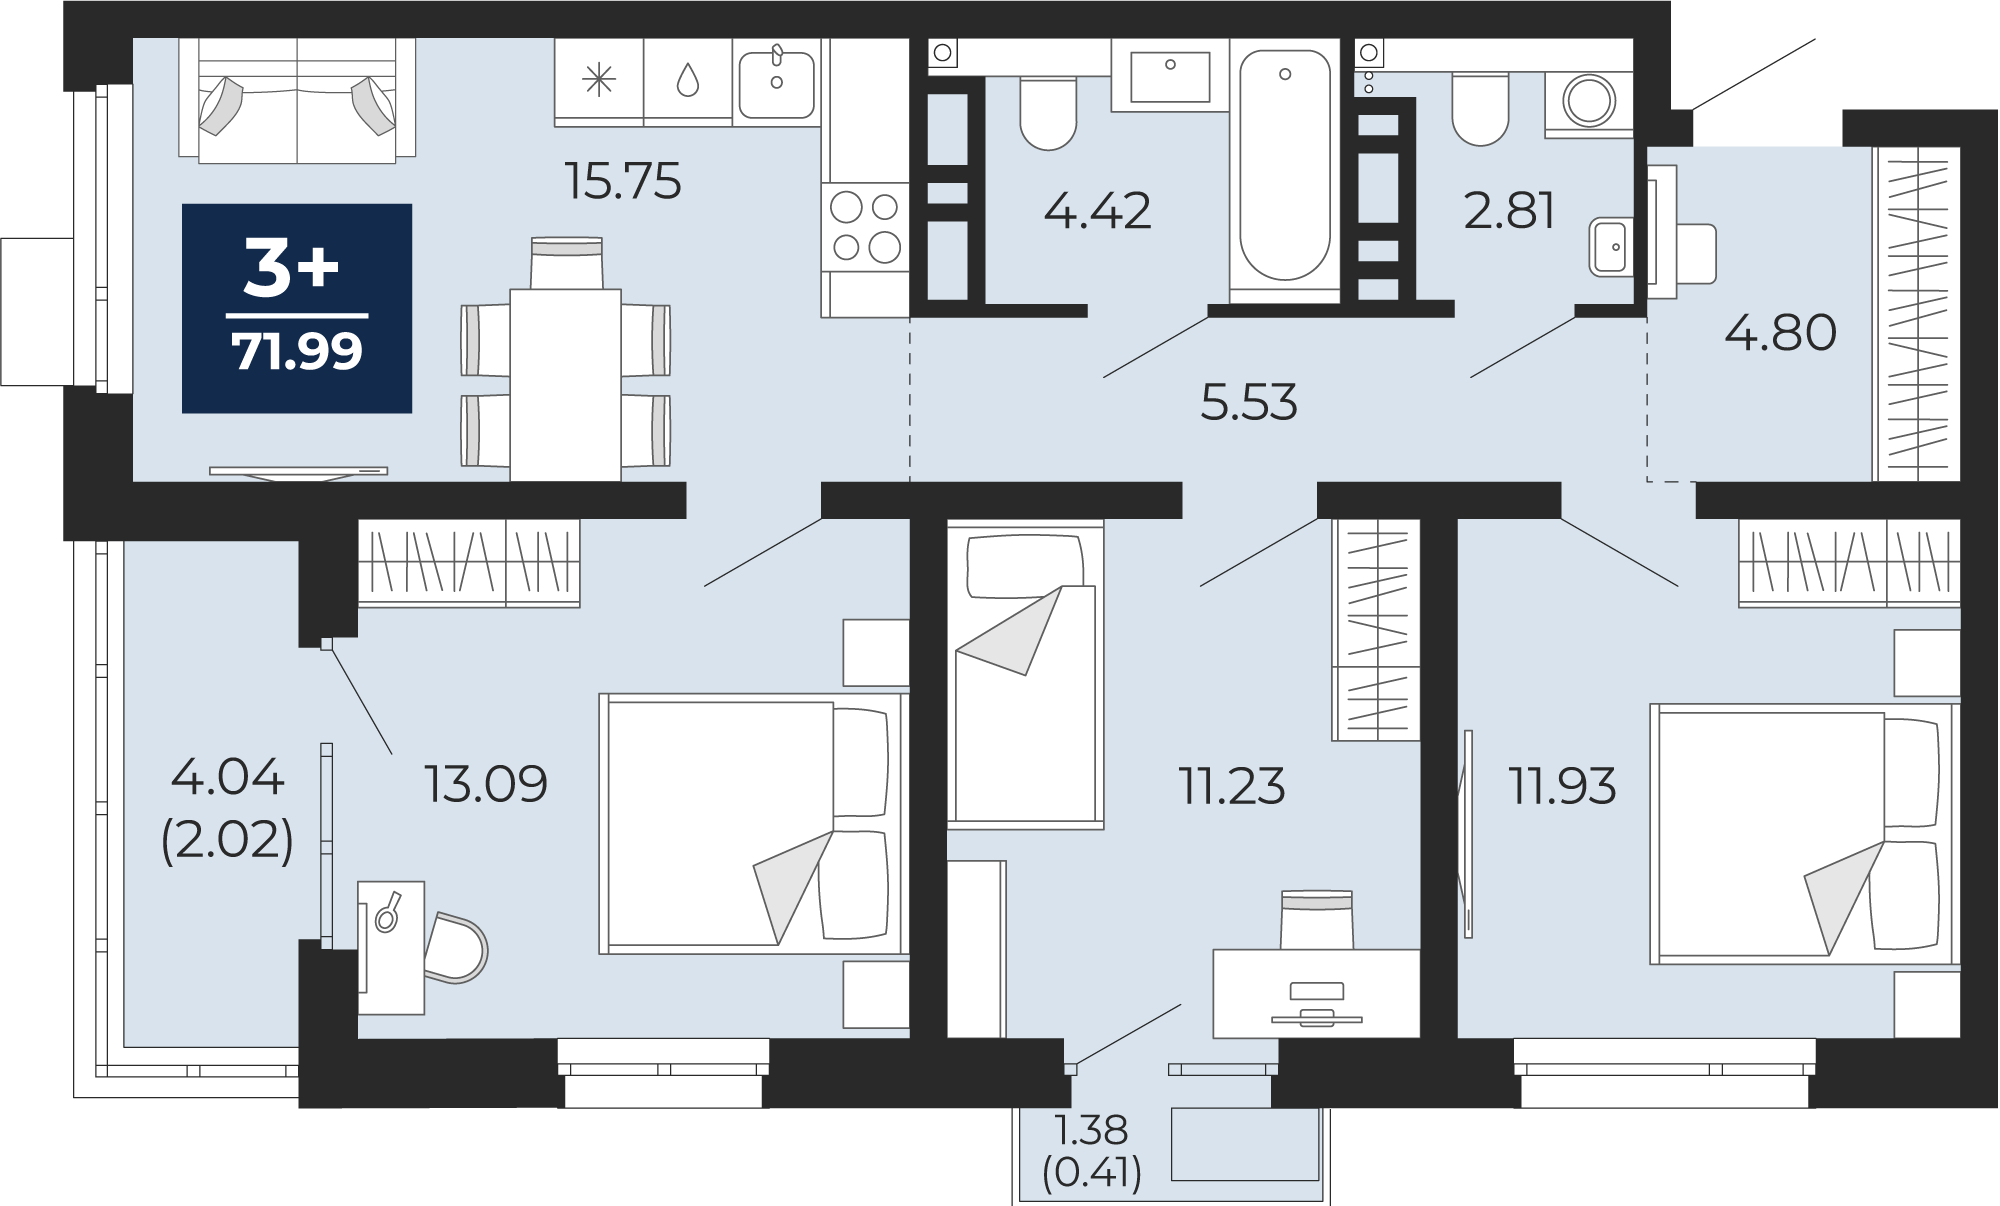 Квартира № 368, 3-комнатная, 71.99 кв. м, 8 этаж